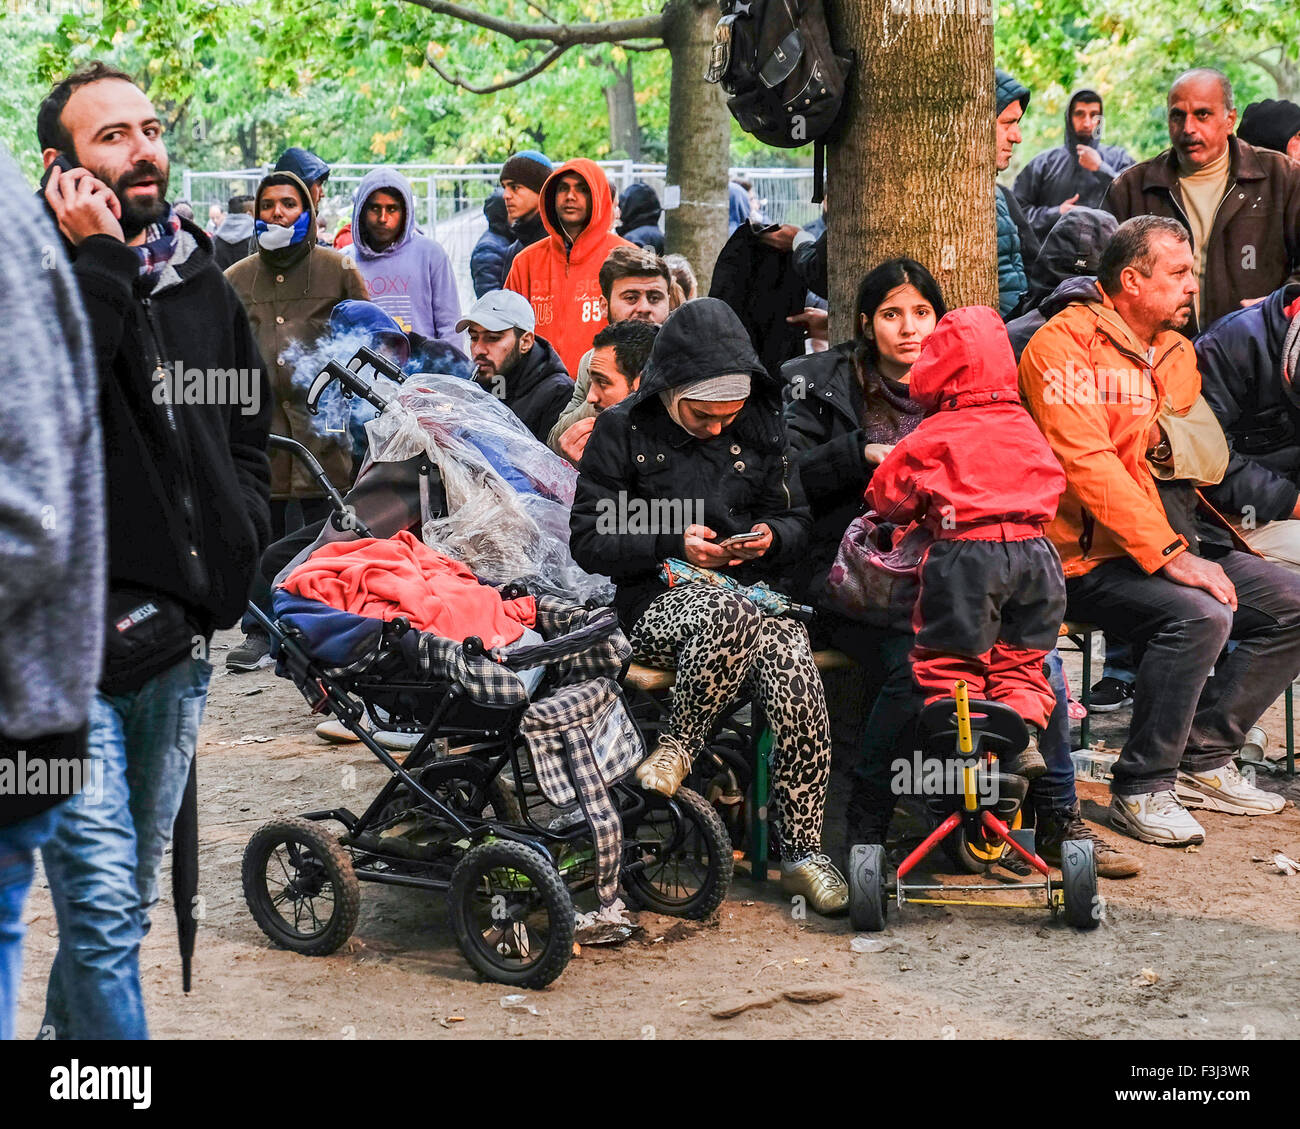 Berlin, Deutschland, 7. Oktober 2014. Berlin begrüßt Flüchtlinge jedoch die Stadt kämpft, um die Massen zu verarbeiten, die im Zentrum LaGeSo (Forschungsdefizite Für Gesundheit Und Landeserziehungsgeld) jeden Tag eintreffen. Müde Reisende kämpfen für Interview Zahlen und warten Sie, bis ihre Zahl angezeigt werden. Die wenigen glücklichen durch das Zentrum schnell aber viele ertragen Verzögerungen von Tagen oder Wochen. Kleine Zelte sprießen, decken verteilen und Kinder packen ihre kargen Besitztümer. Beamten und Freiwilligen sind lange Arbeitszeiten zu lindern die Situation und die traurige Ankünfte zu unterstützen. Bildnachweis: Eden Breitz/Alamy Live neu Stockfoto